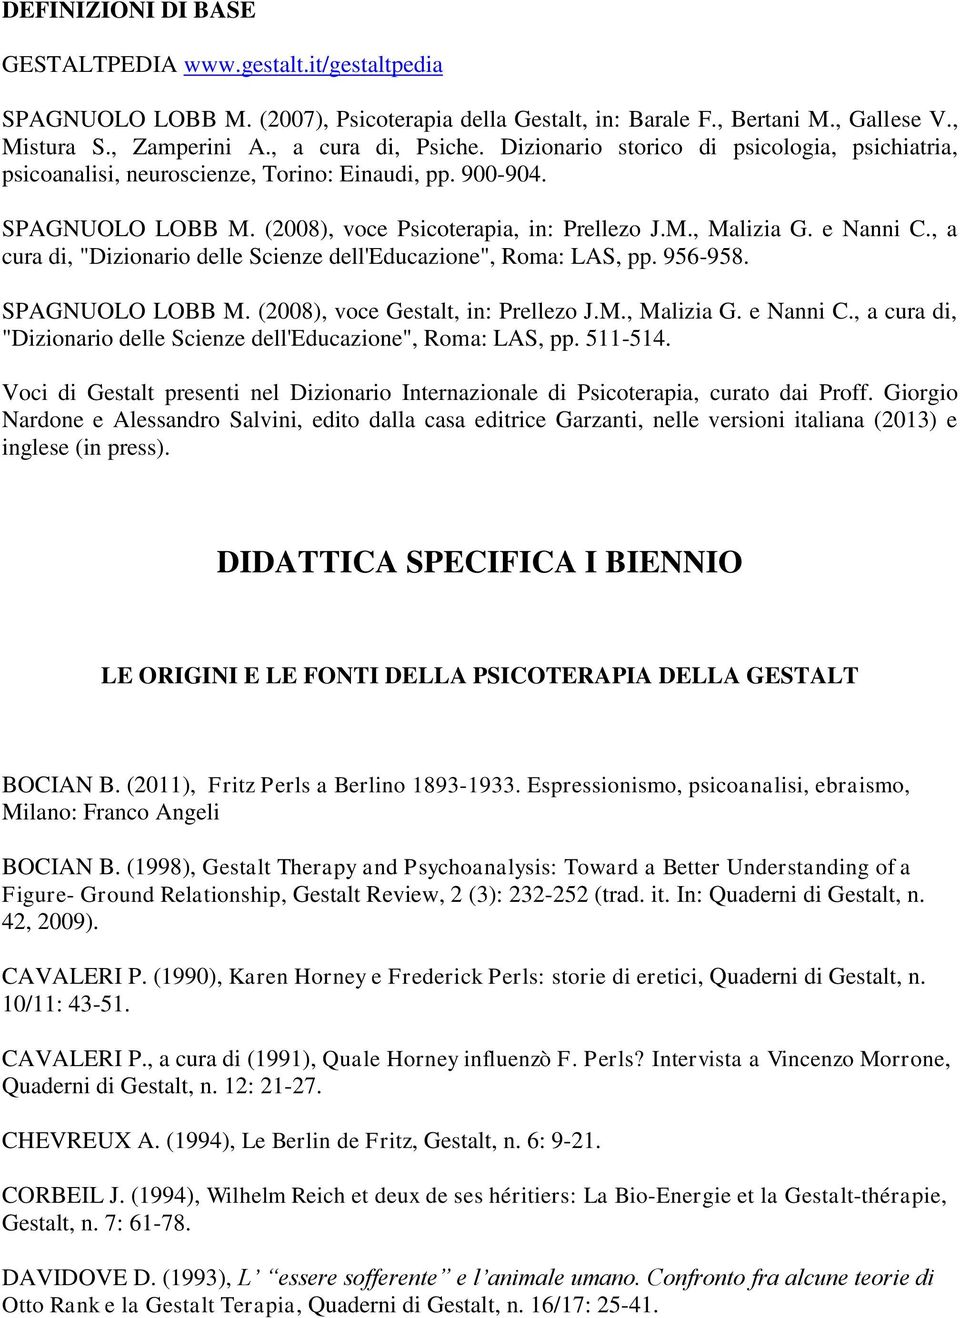 , a cura di, "Dizionario delle Scienze dell'educazione", Roma: LAS, pp. 956-958. SPAGNUOLO LOBB M. (2008), voce Gestalt, in: Prellezo J.M., Malizia G. e Nanni C.